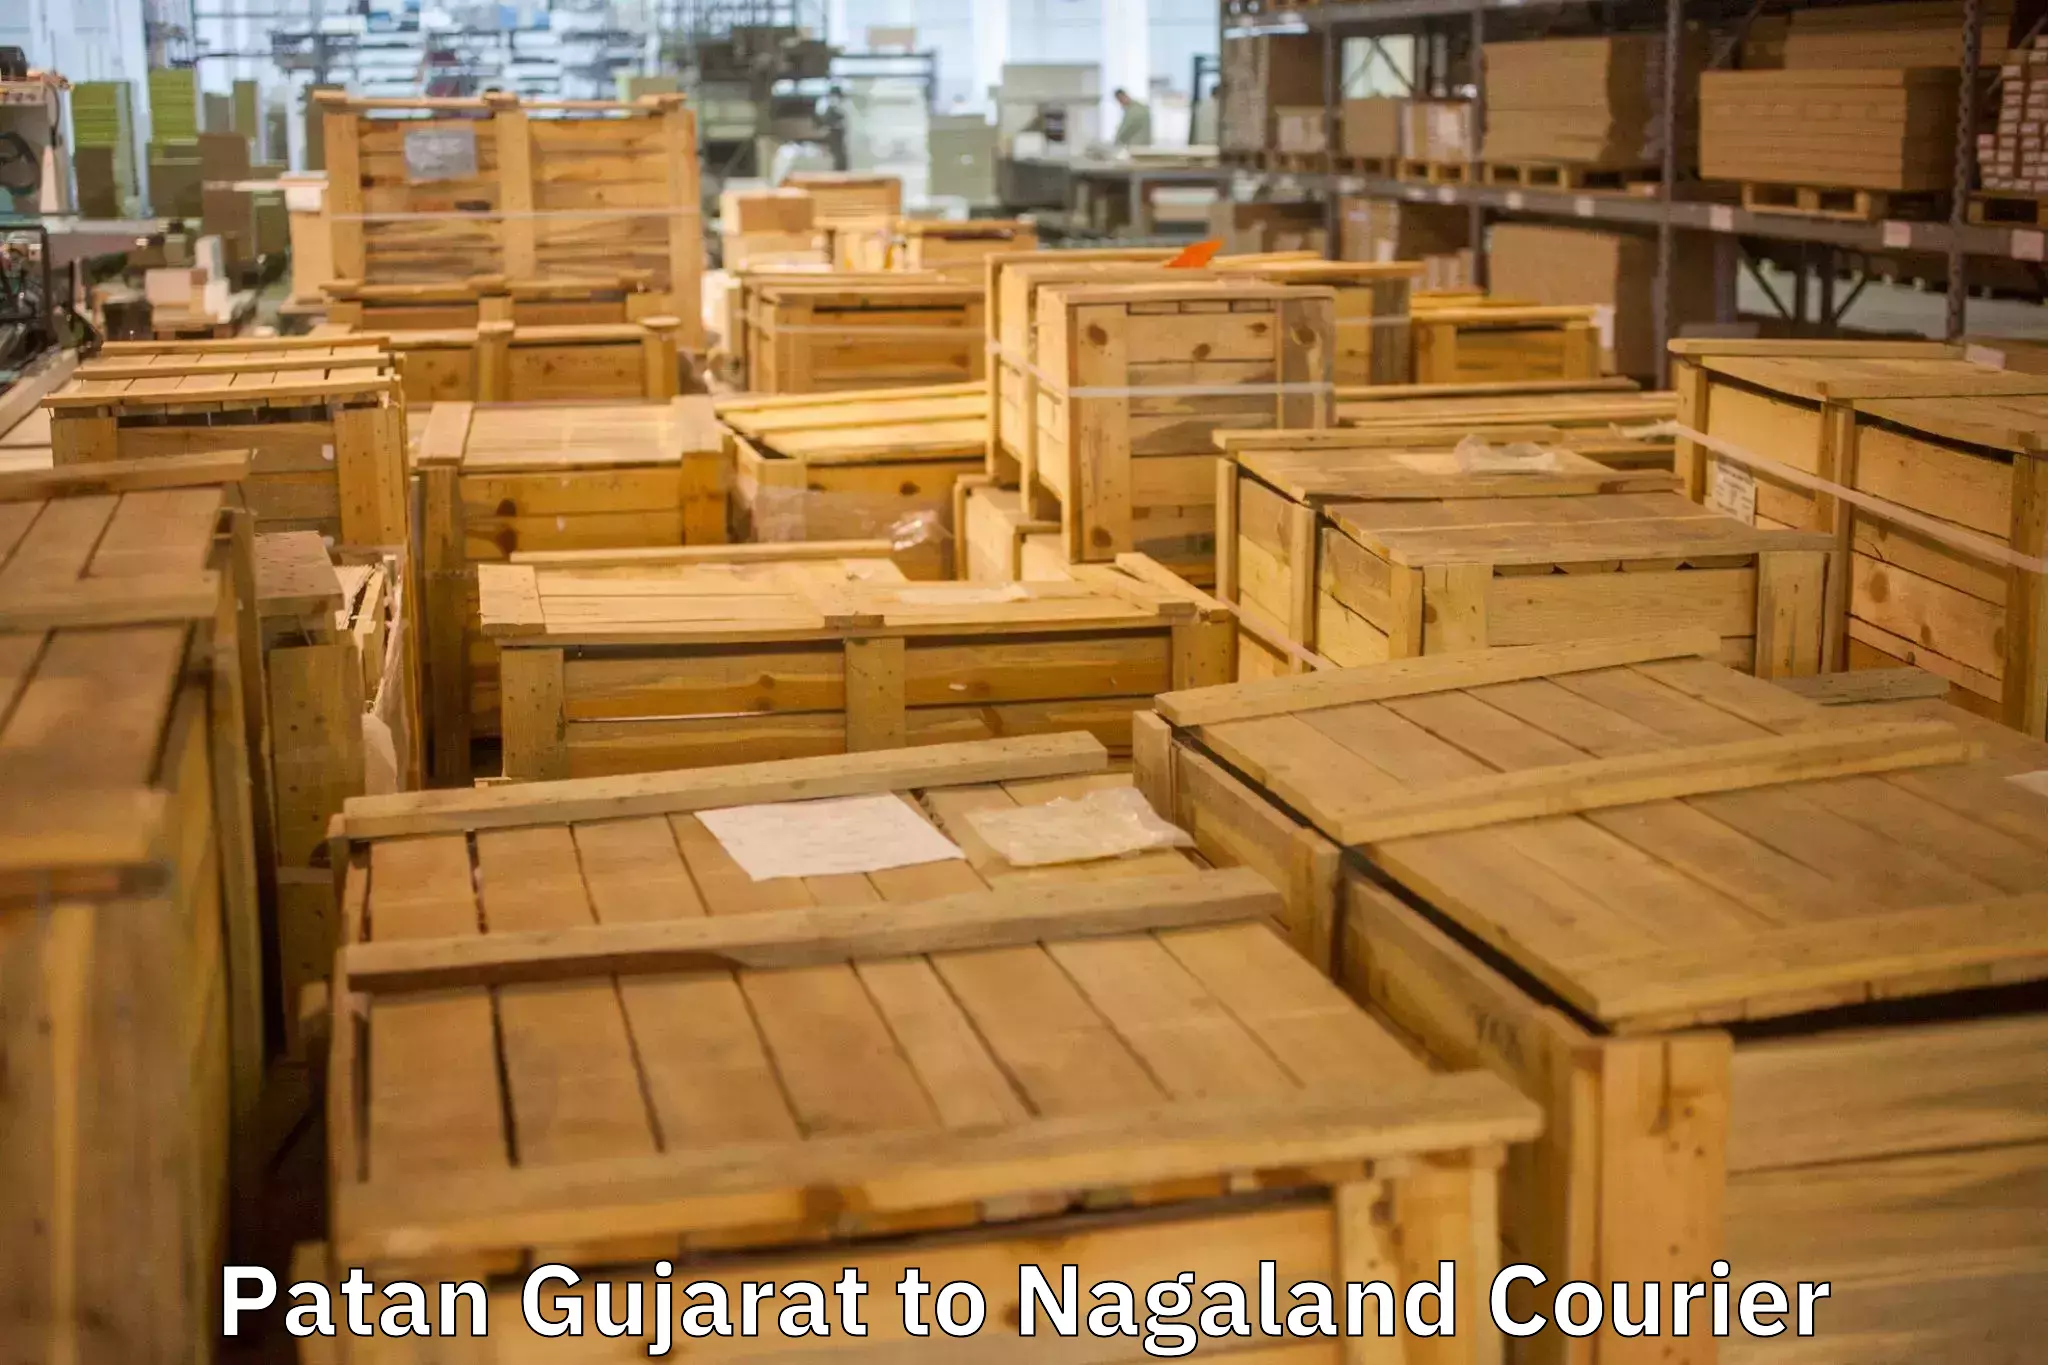 Furniture transport specialists Patan Gujarat to Wokha